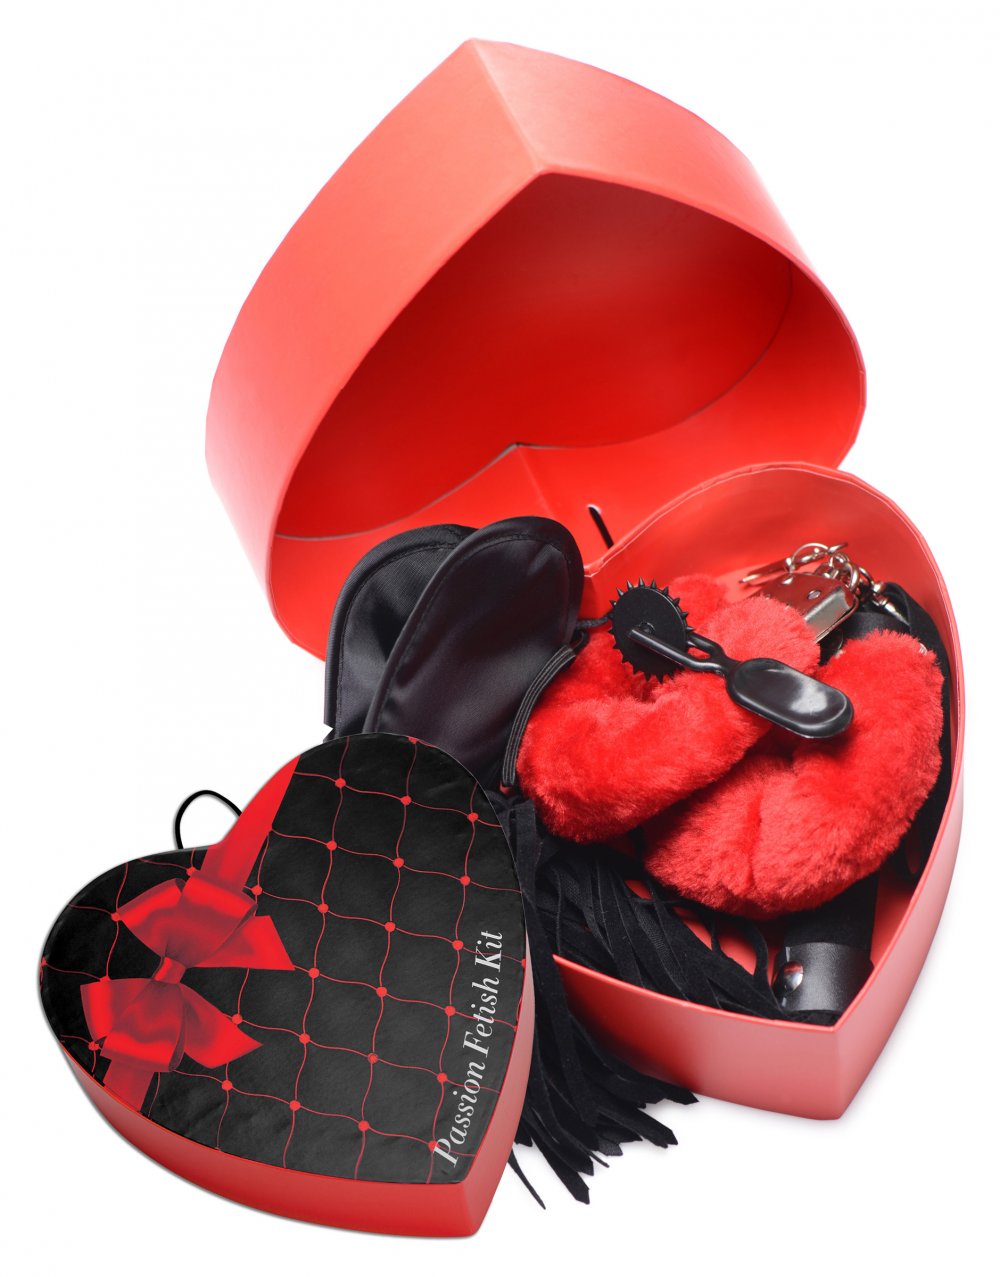 Valentine’s Day Passion Fetish Kit